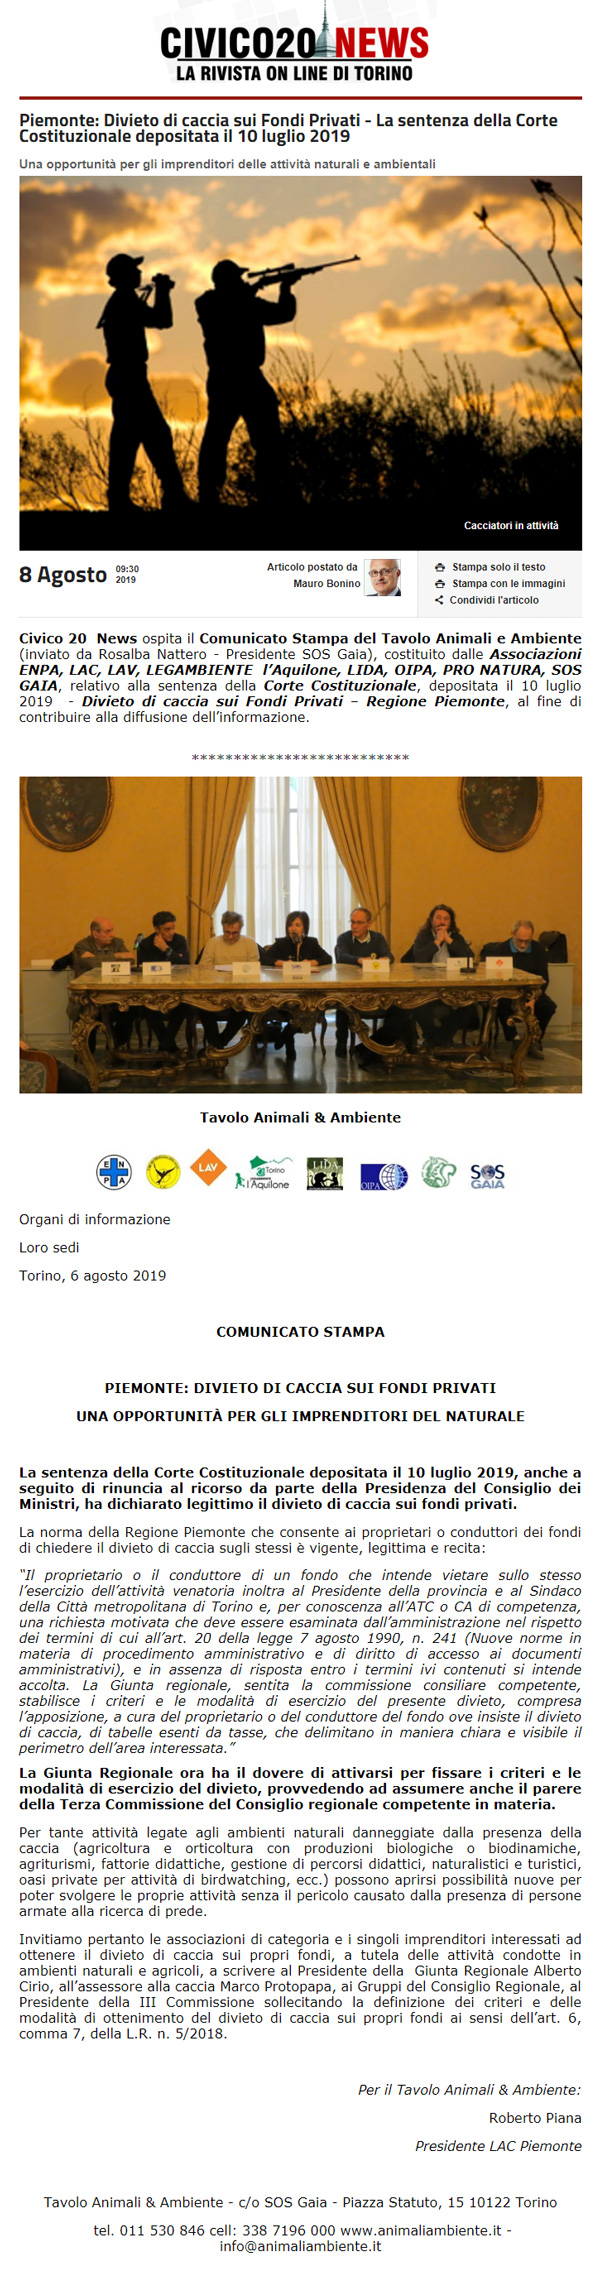 civico20-news-08-08-2019-Divieto-di-caccia-sui-fondi-privati